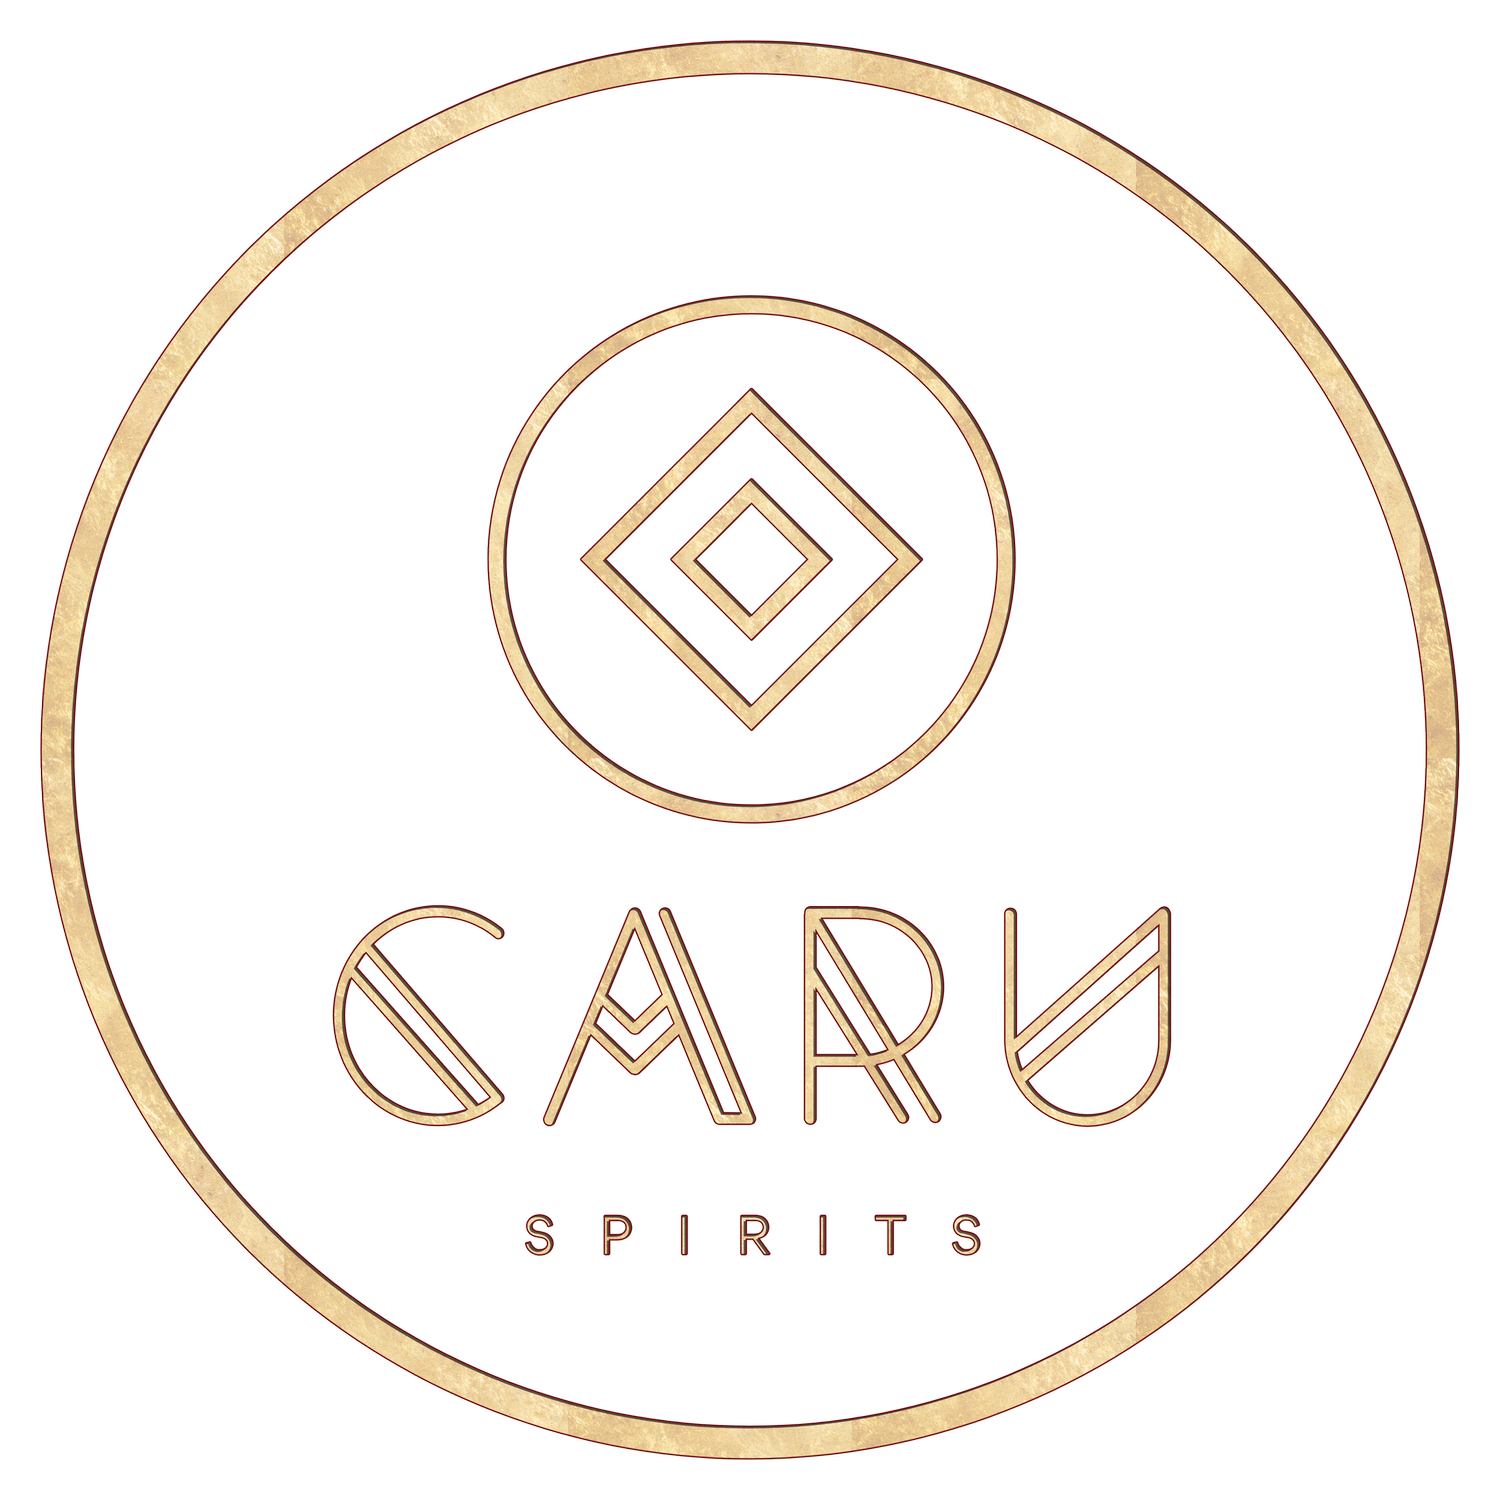 CARU SPIRITS